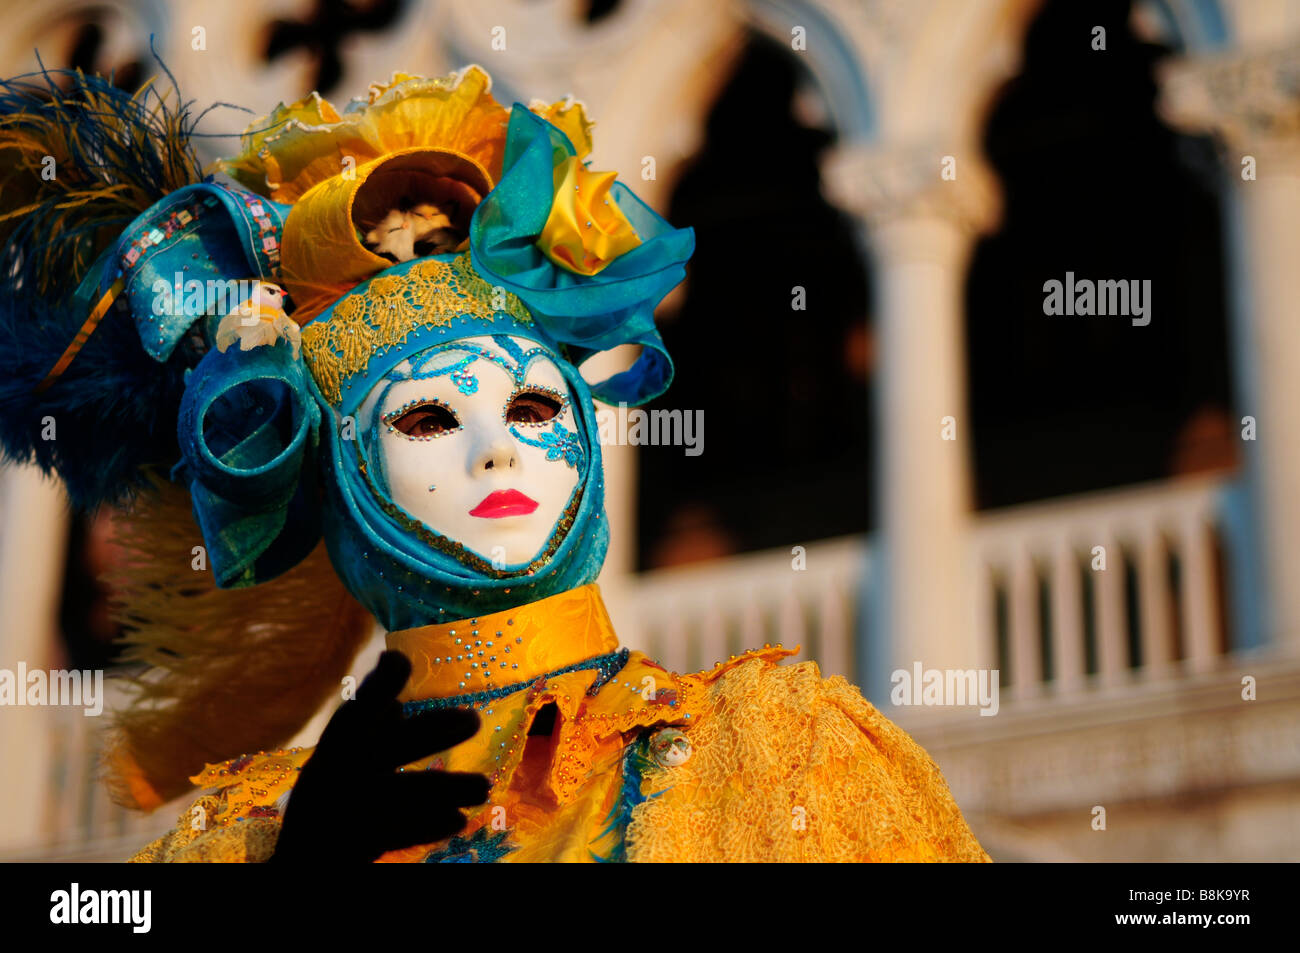 Italy, Venice carnival Stock Photo - Alamy